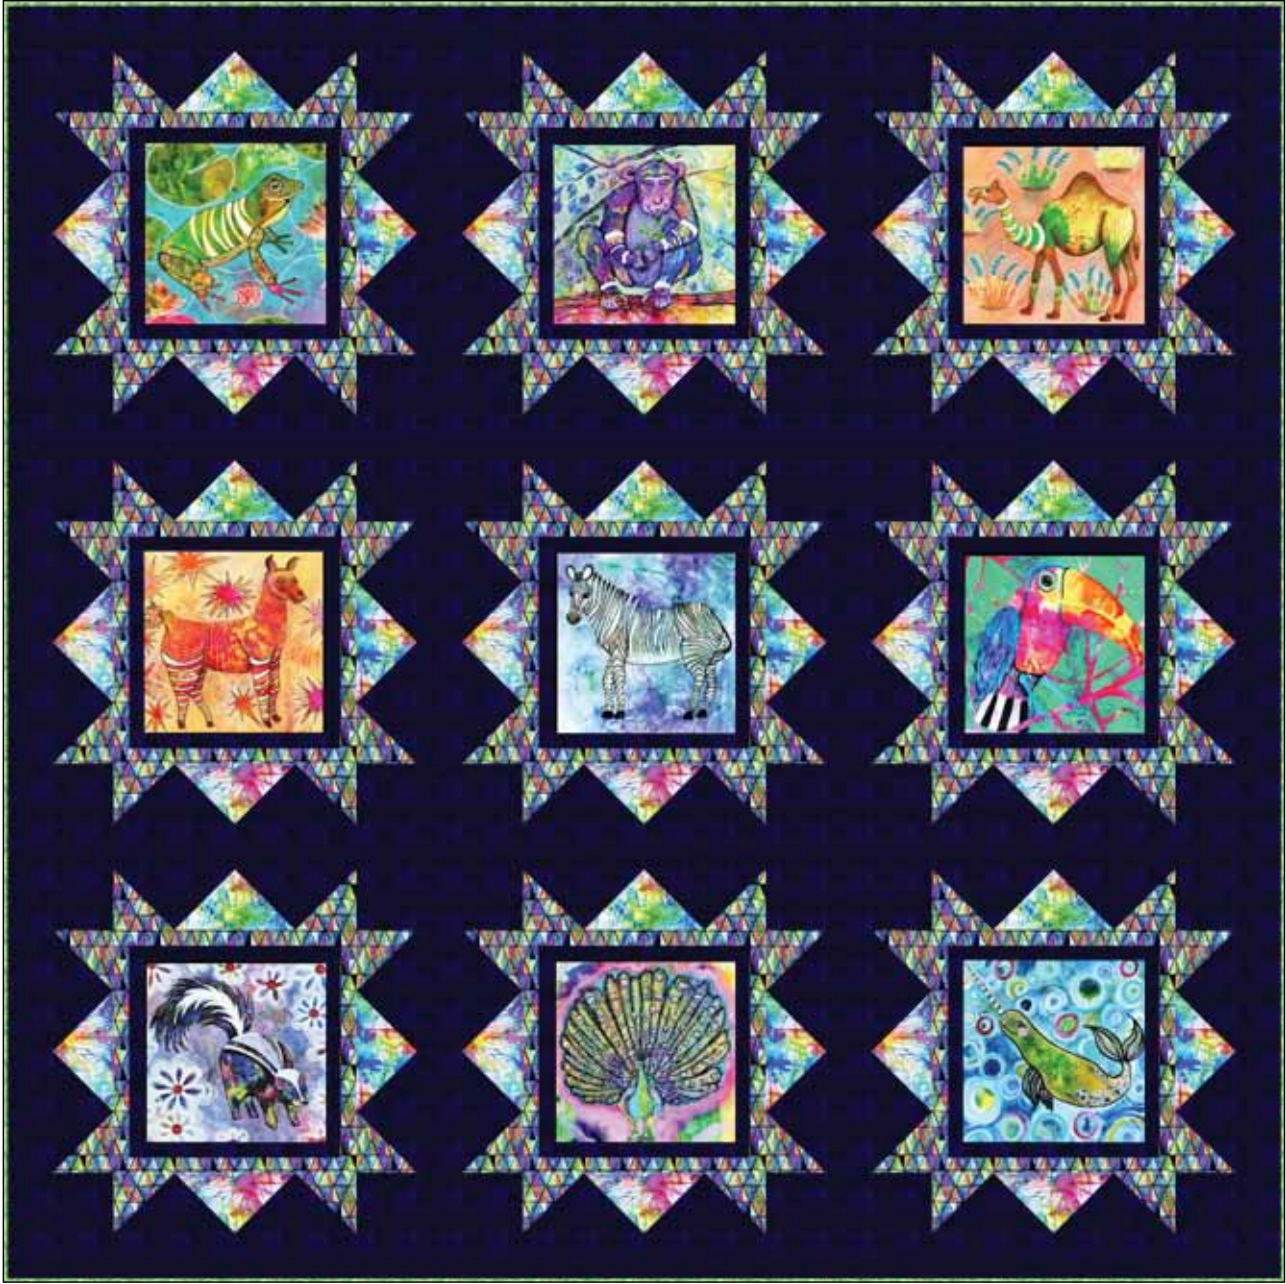 Wild Animals Panel Quilt Pattern - Free Digital Download